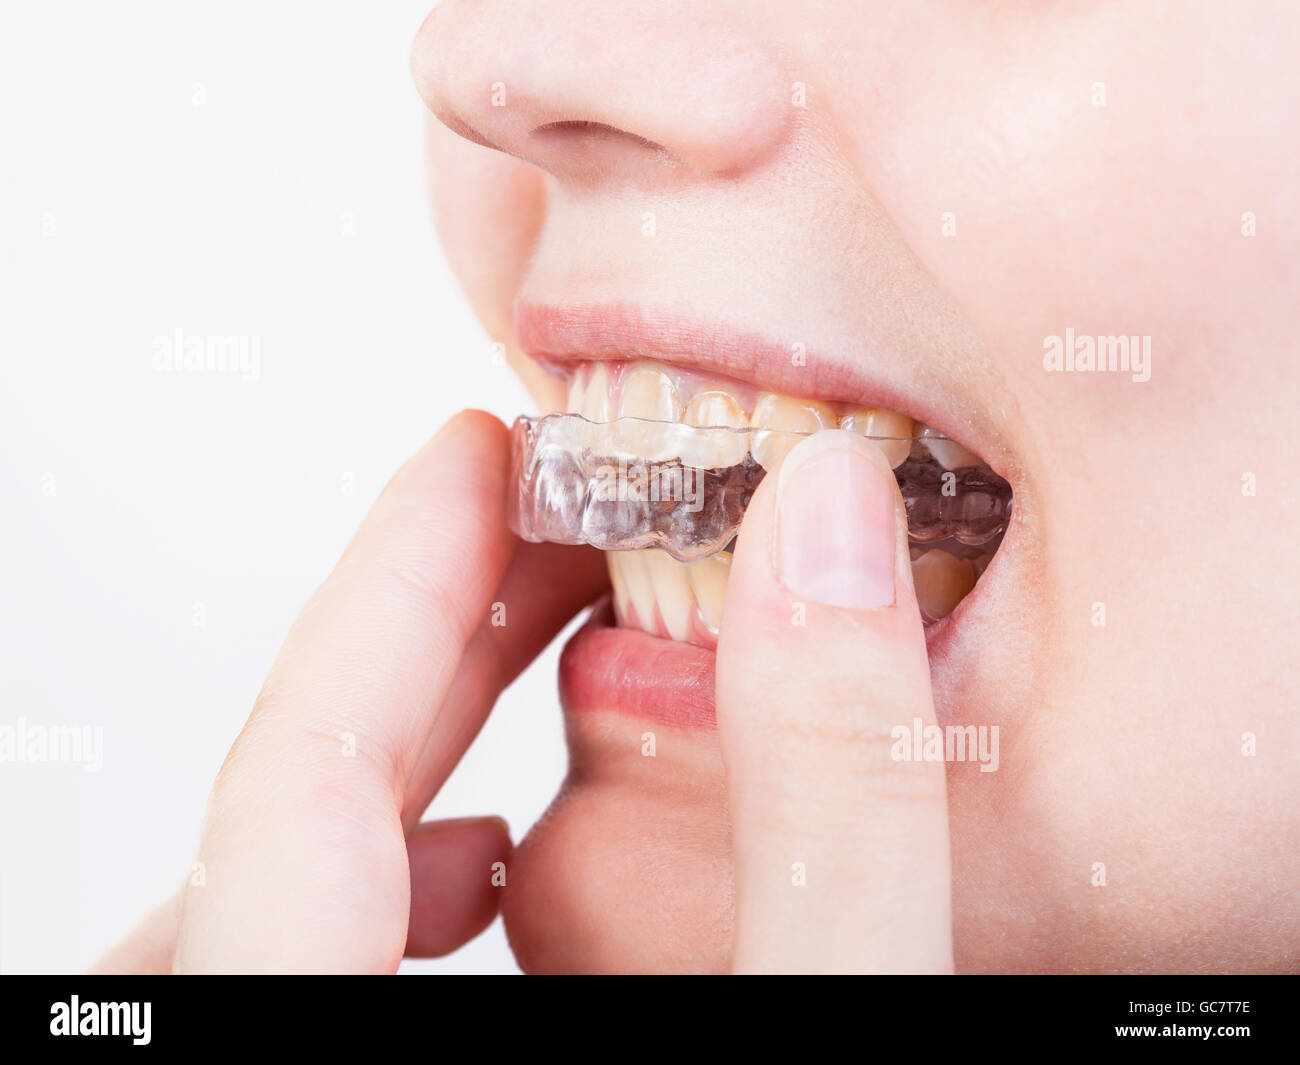 Ragazza fissa allineatore trasparente per il trattamento dentale Foto Stock